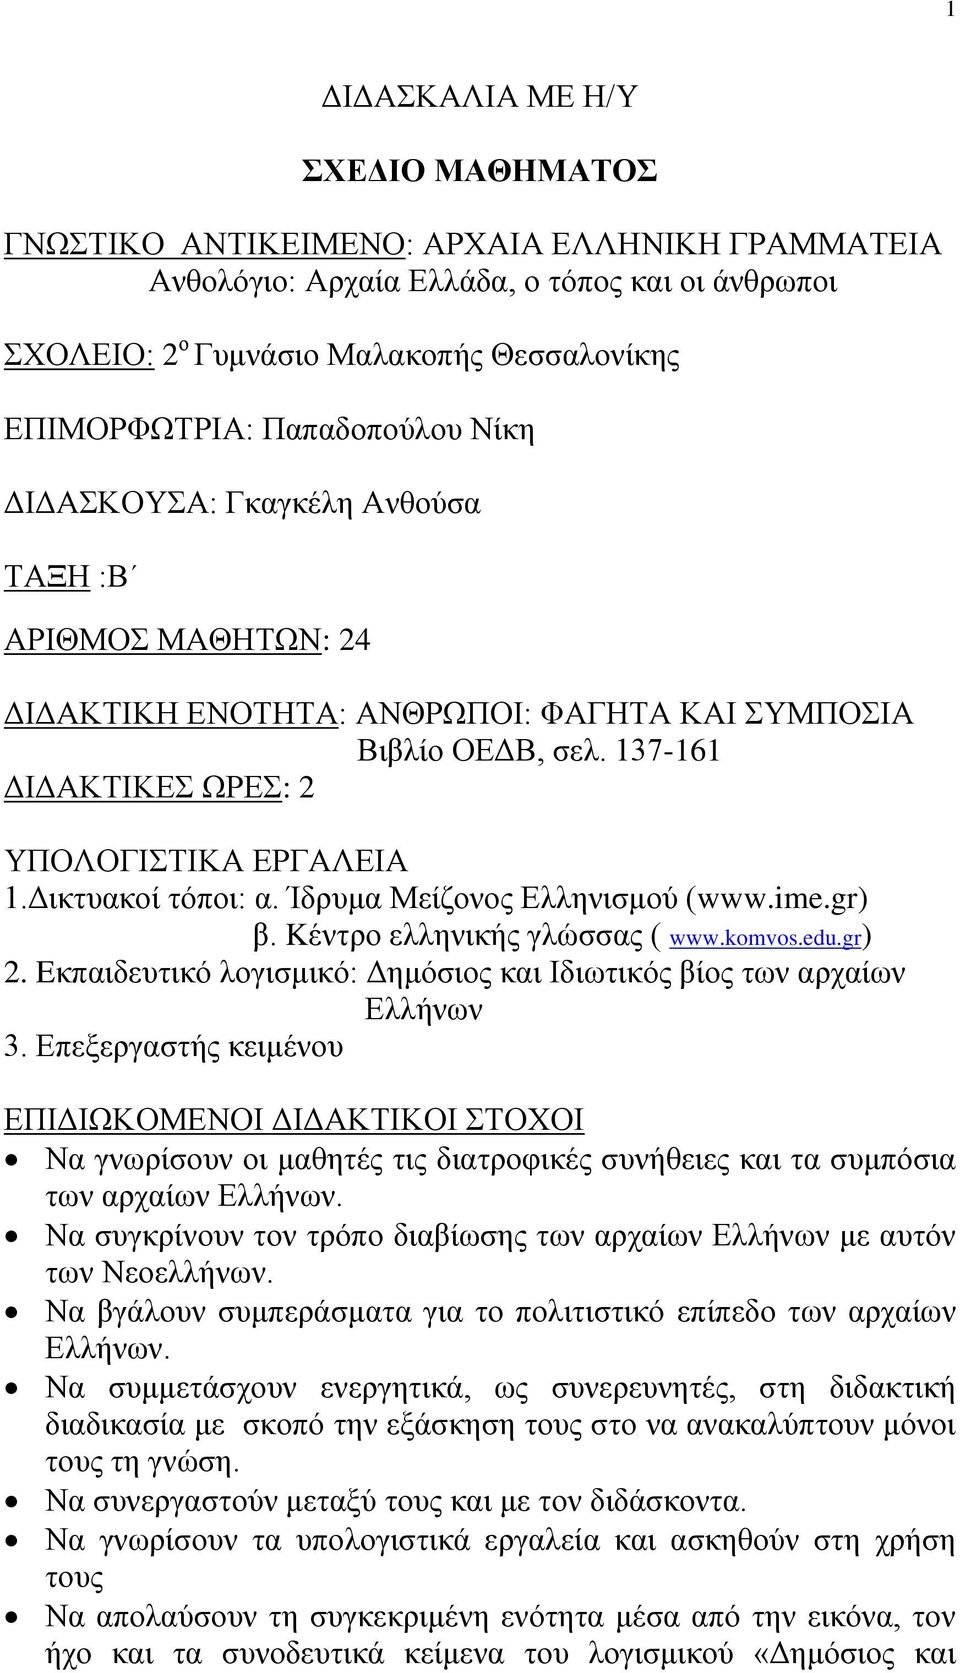 Δικτυακοί τόποι: α. Ίδρυμα Μείζονος Ελληνισμού (www.ime.gr) β. Kέντρο ελληνικής γλώσσας ( www.komvos.edu.gr) 2. Eκπαιδευτικό λογισμικό: Δημόσιος και Ιδιωτικός βίος των αρχαίων Ελλήνων 3.